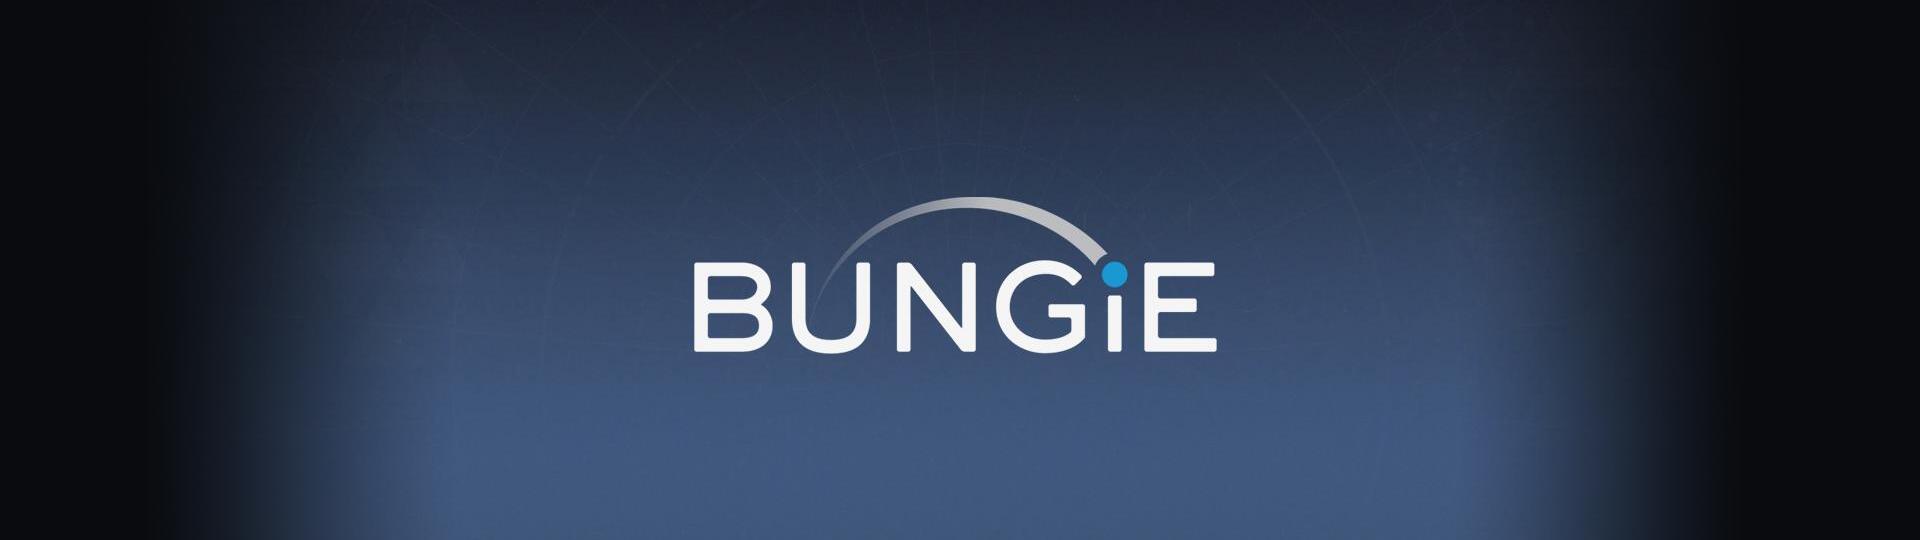 Sony kupuje studio Bungie, tvůrce Destiny a Halo | Novinky